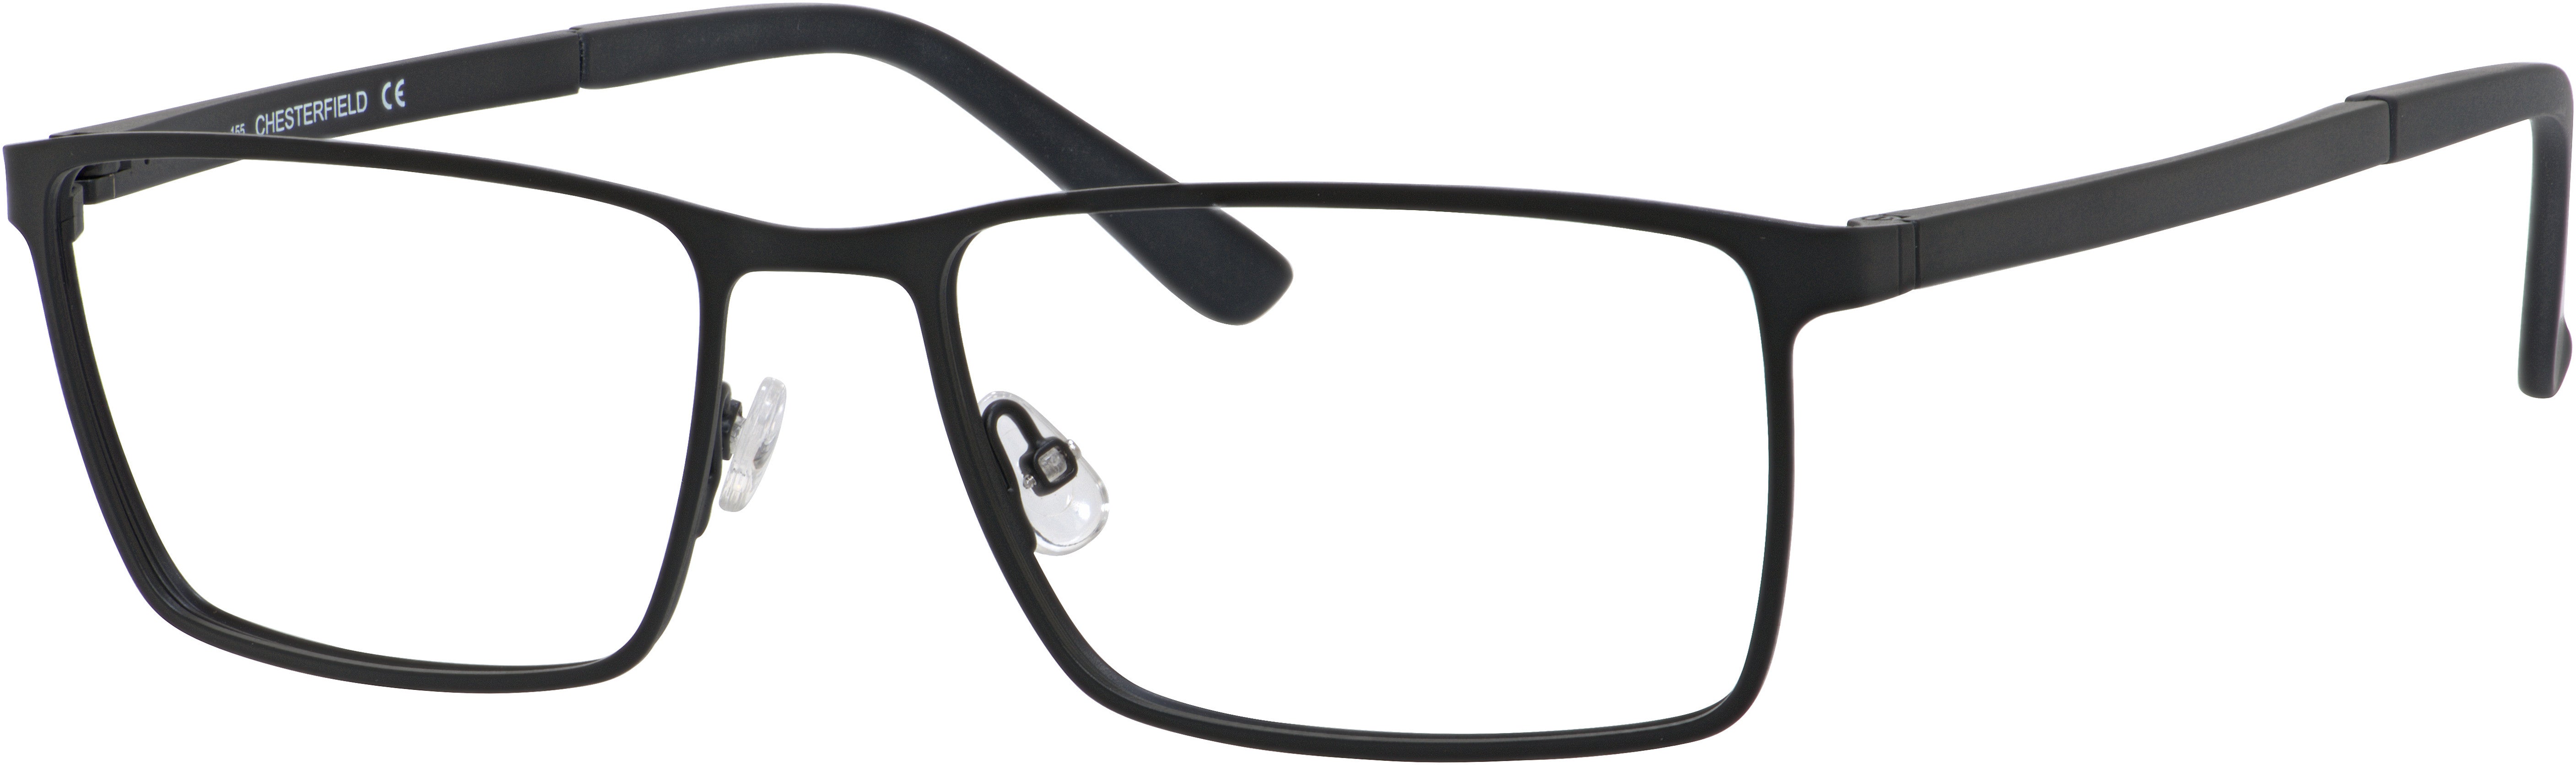  Chesterfield 55XL Rectangular Eyeglasses 0003-0003  Matte Black (00 Demo Lens)